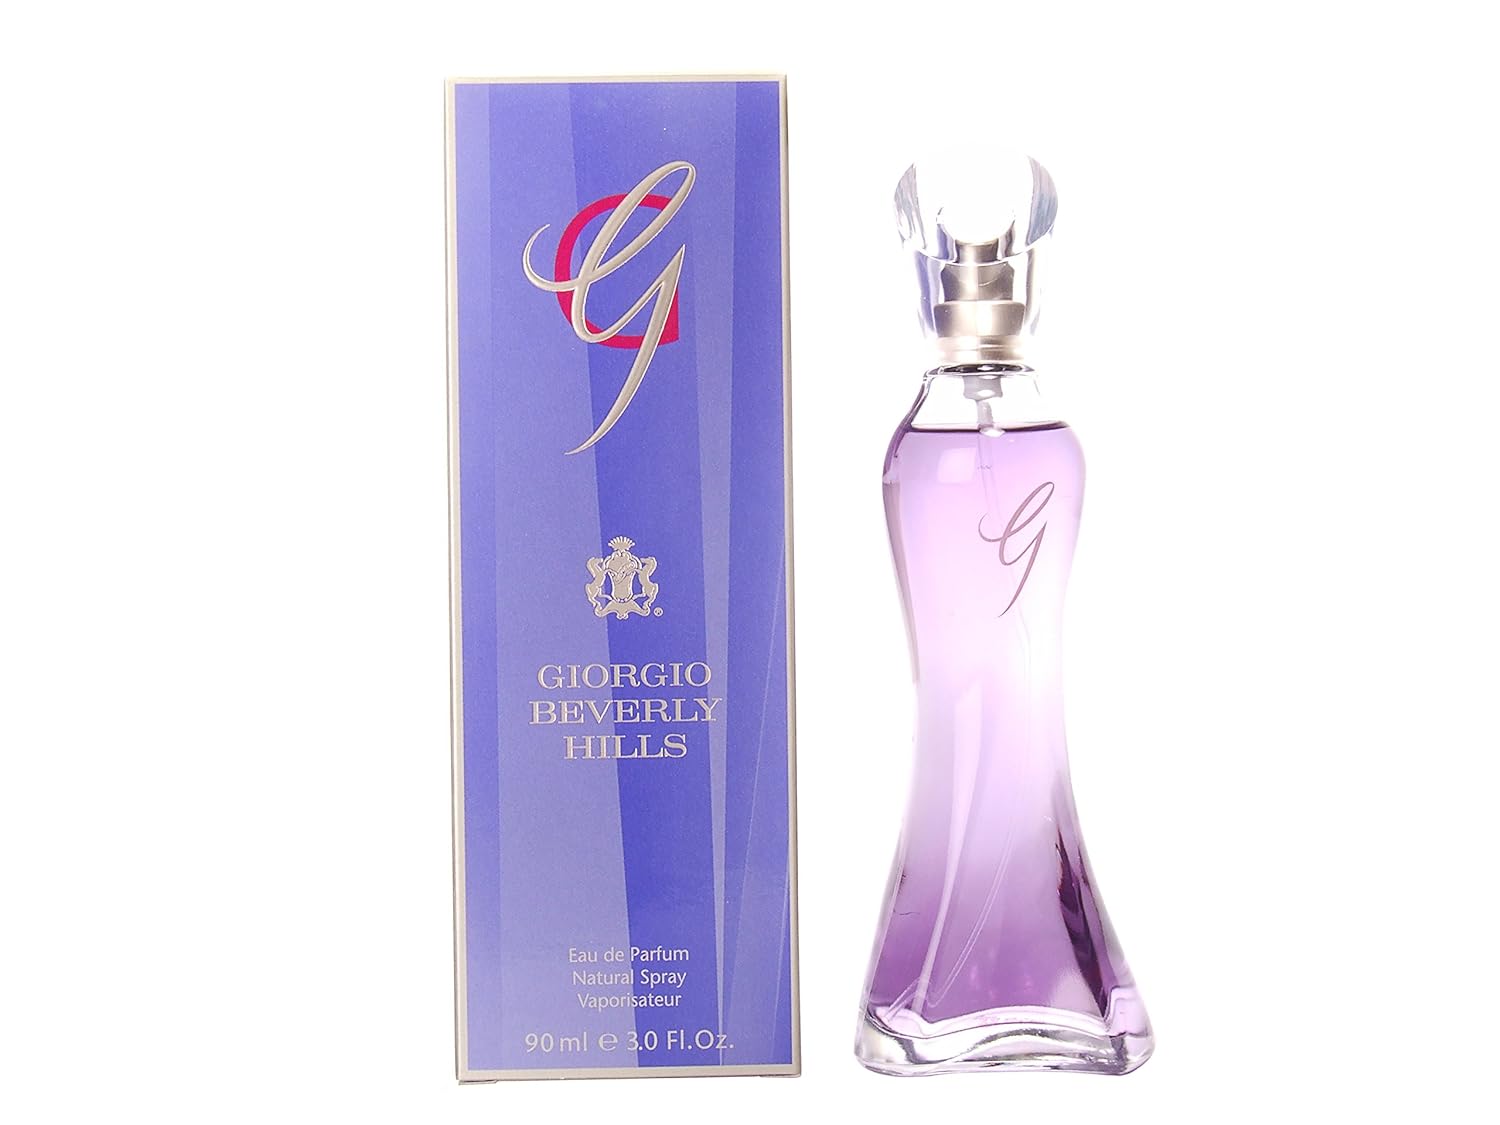 Giorgio Beverly Hills G 90 ml Eau de Parfum